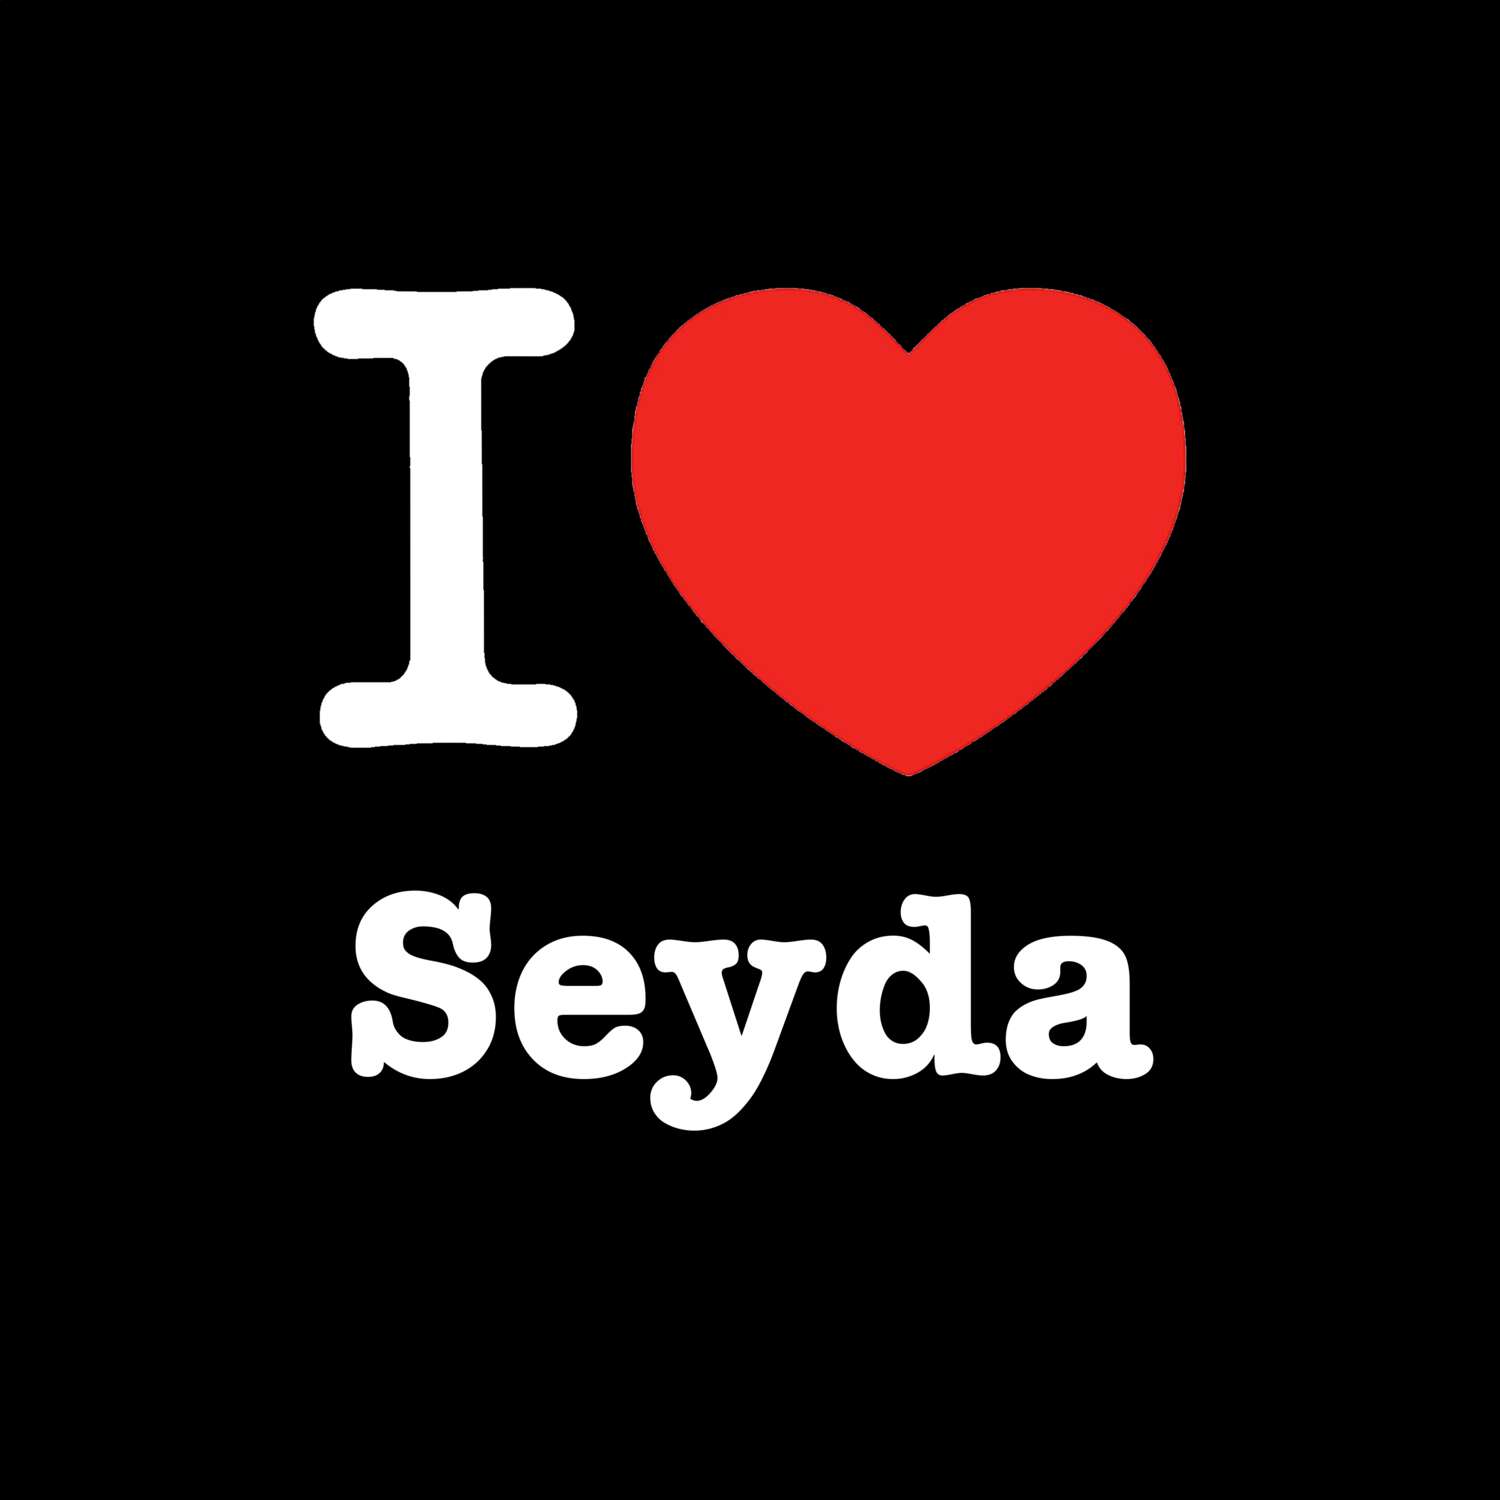 Seyda T-Shirt »I love«